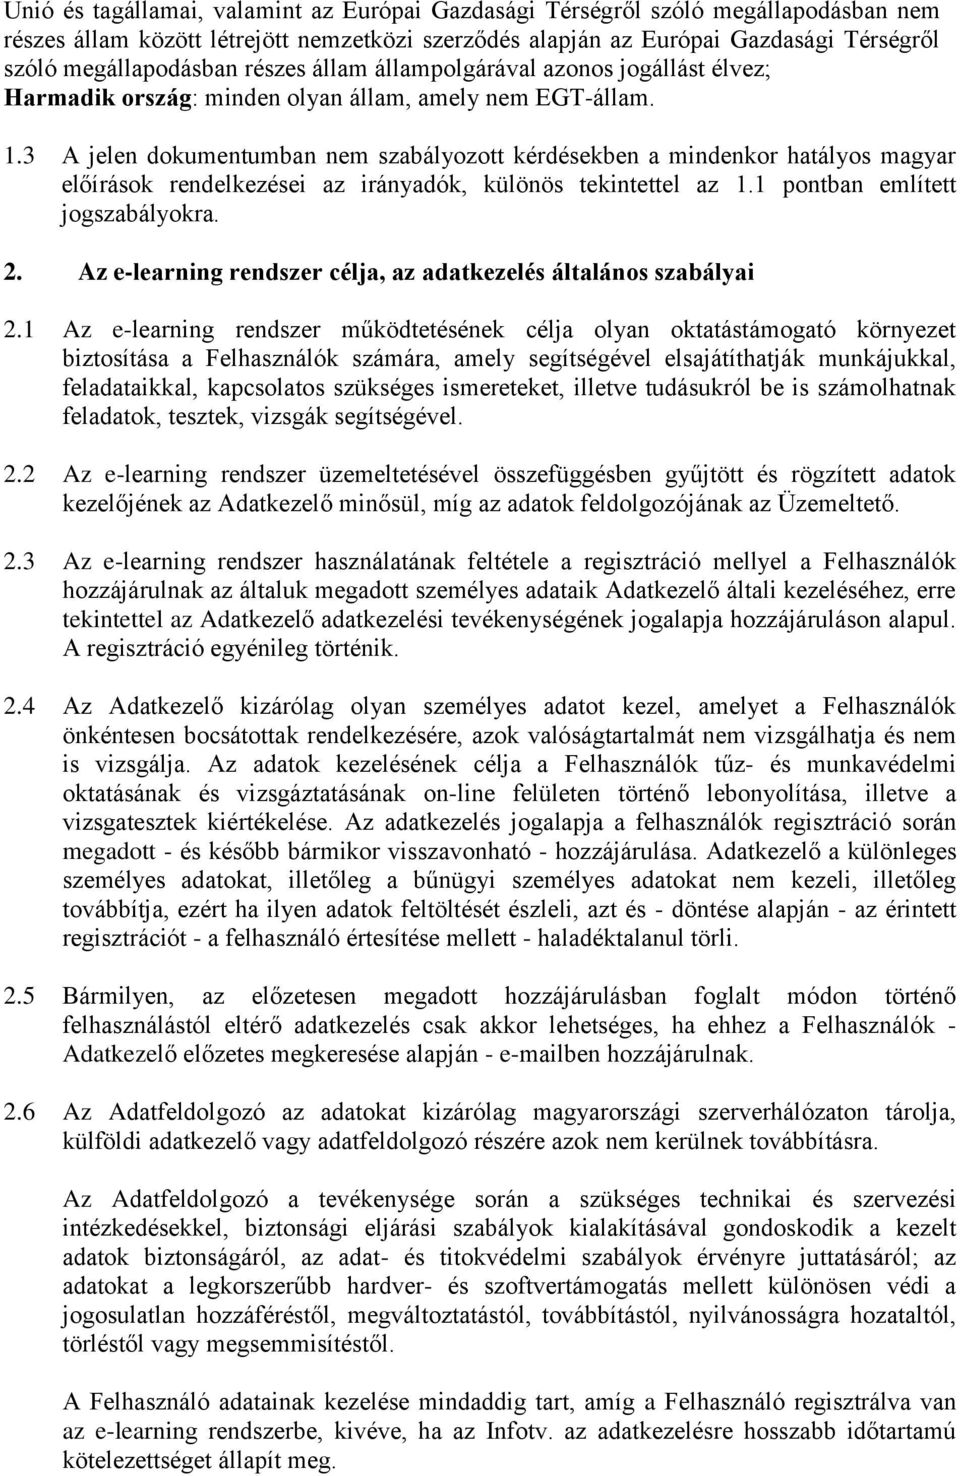 3 A jelen dokumentumban nem szabályozott kérdésekben a mindenkor hatályos magyar előírások rendelkezései az irányadók, különös tekintettel az 1.1 pontban említett jogszabályokra. 2.